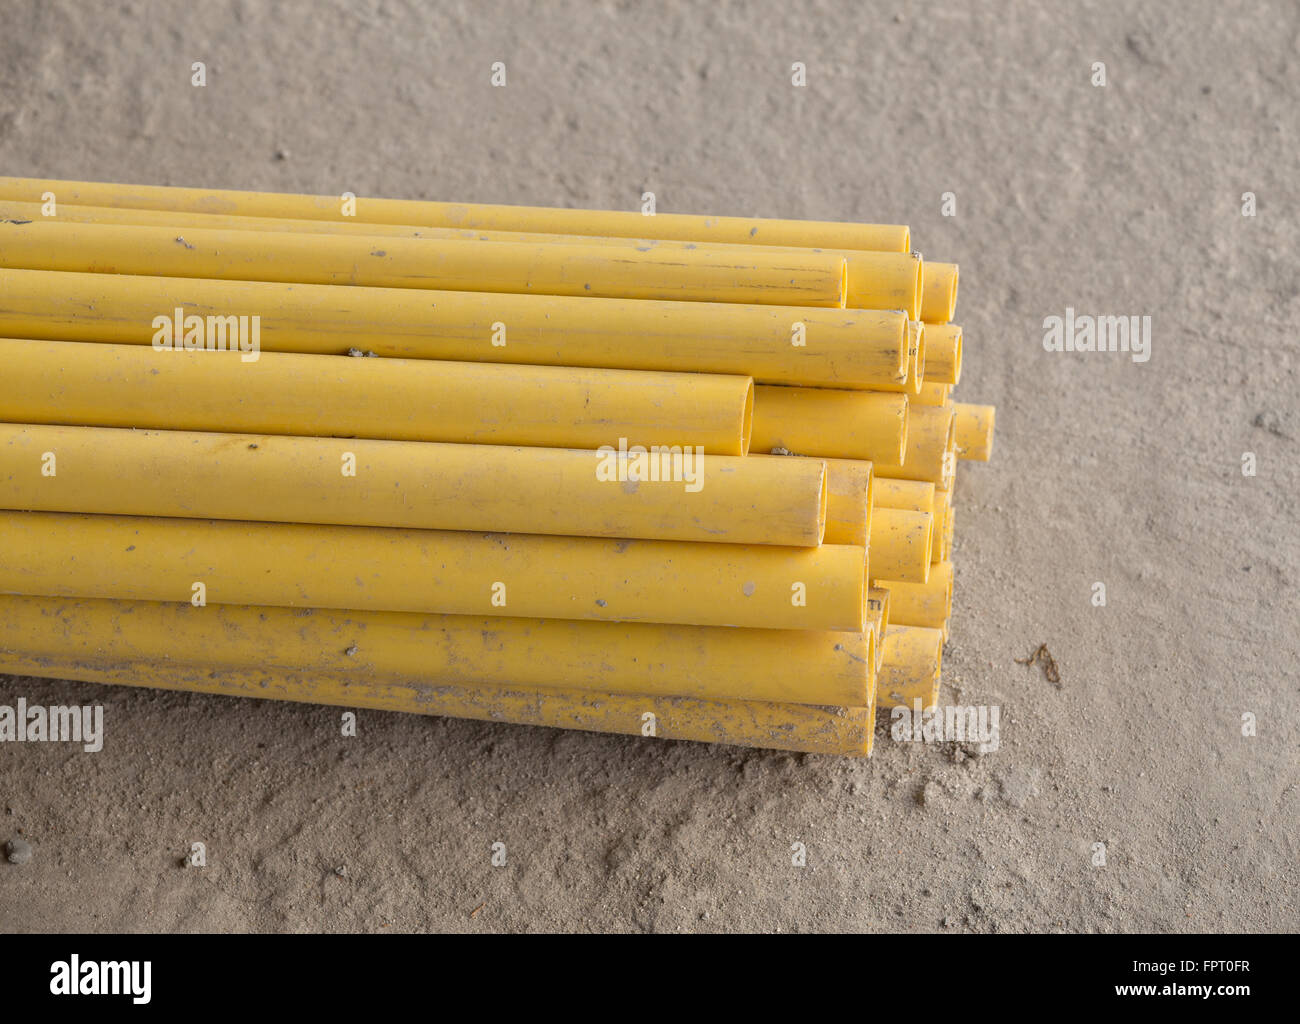 Les tuyaux en PVC jaune pour conduite électrique Banque D'Images